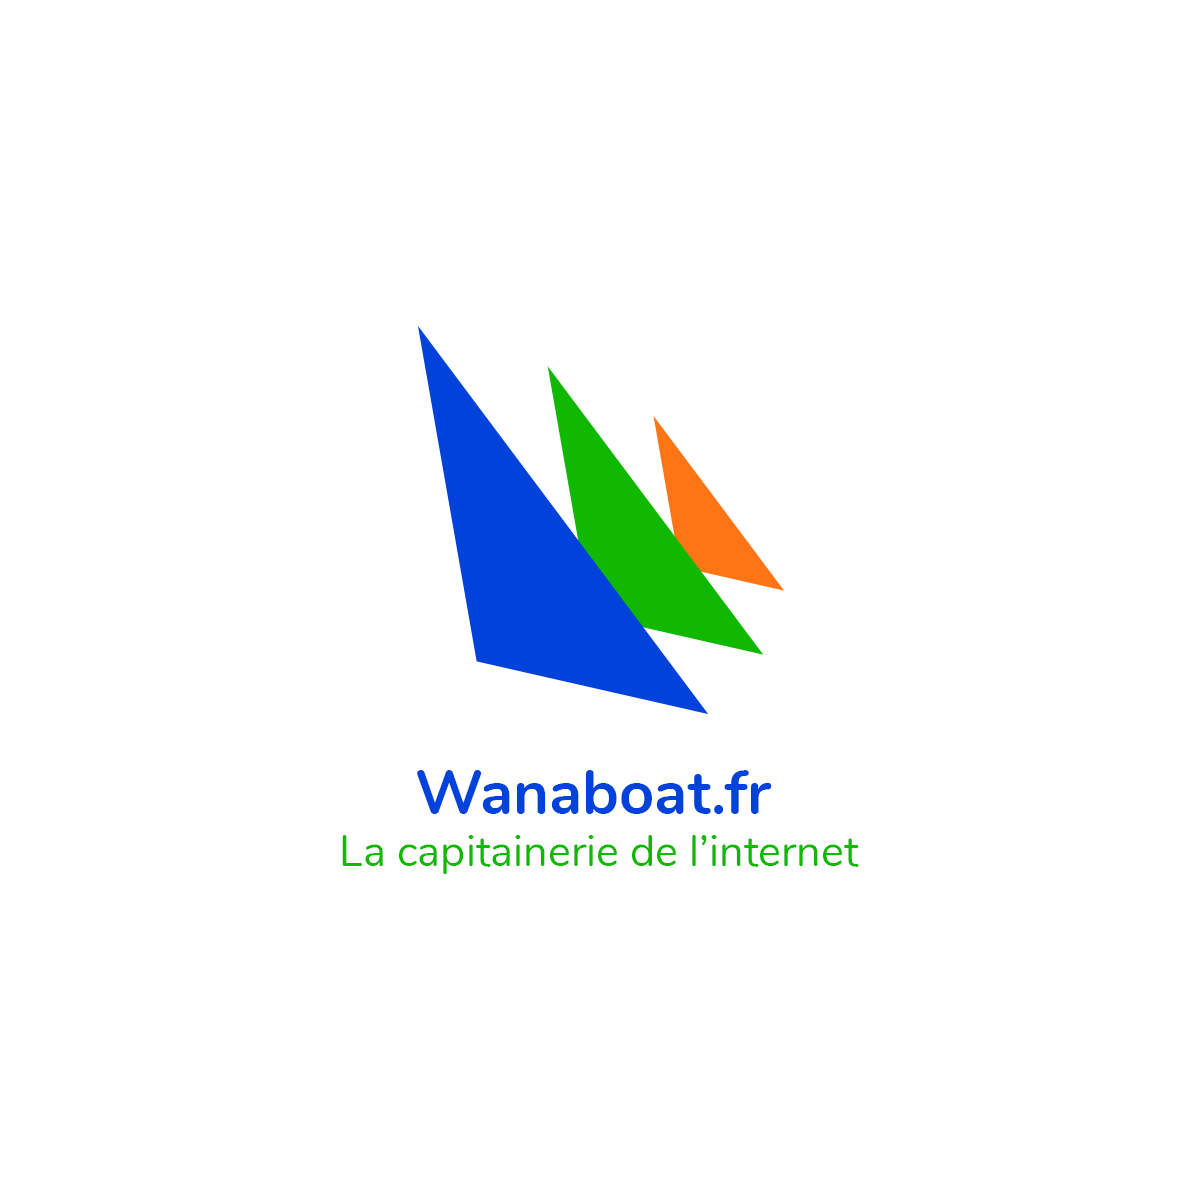 (c) Wanaboat.fr